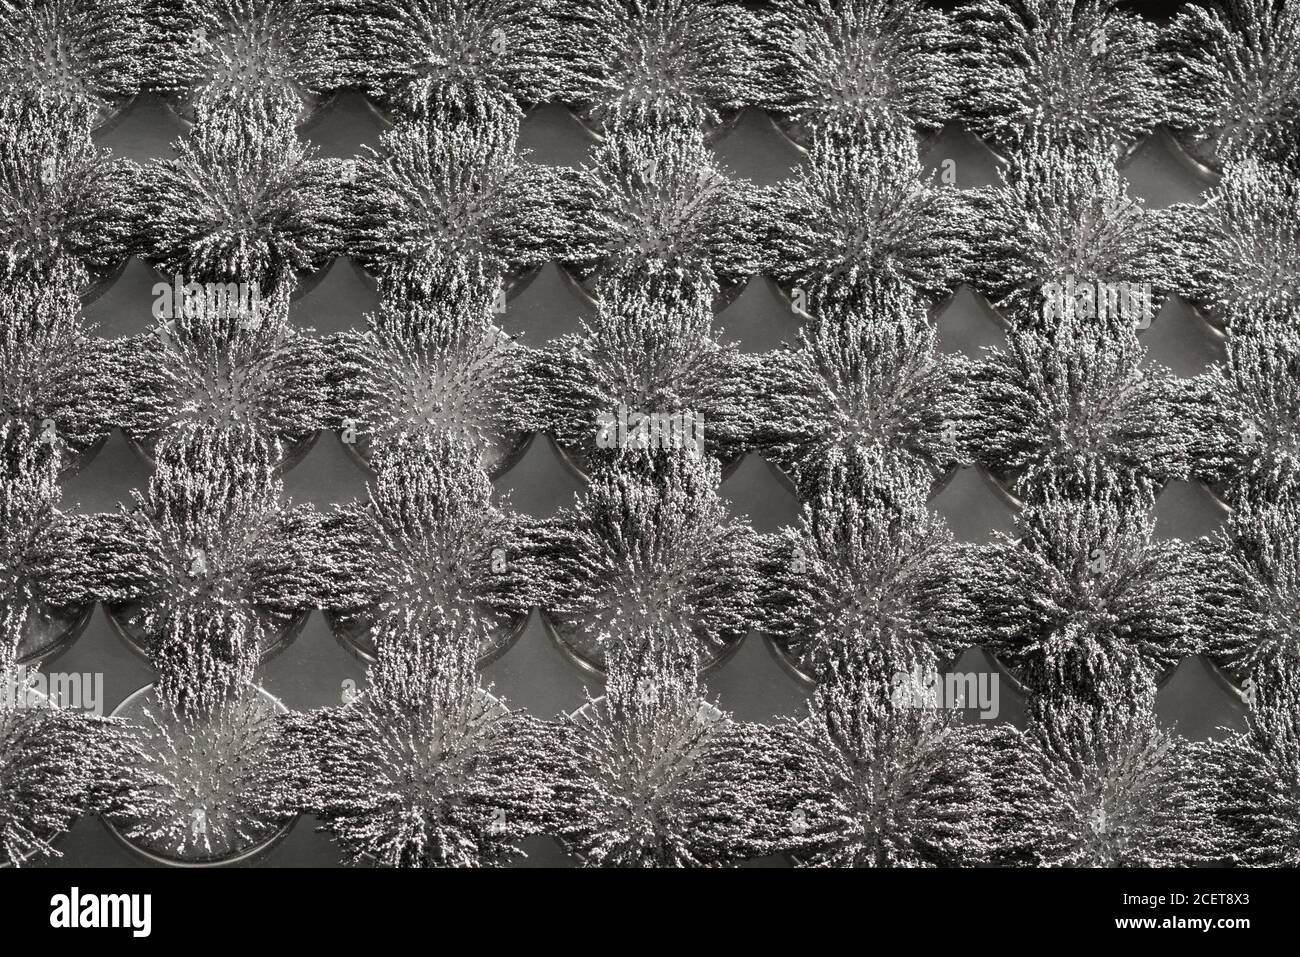 Flusso magnetico invisibile reso visibile con limature di ferro che creano interessanti schemi di interblocco con magnete circolare Foto Stock